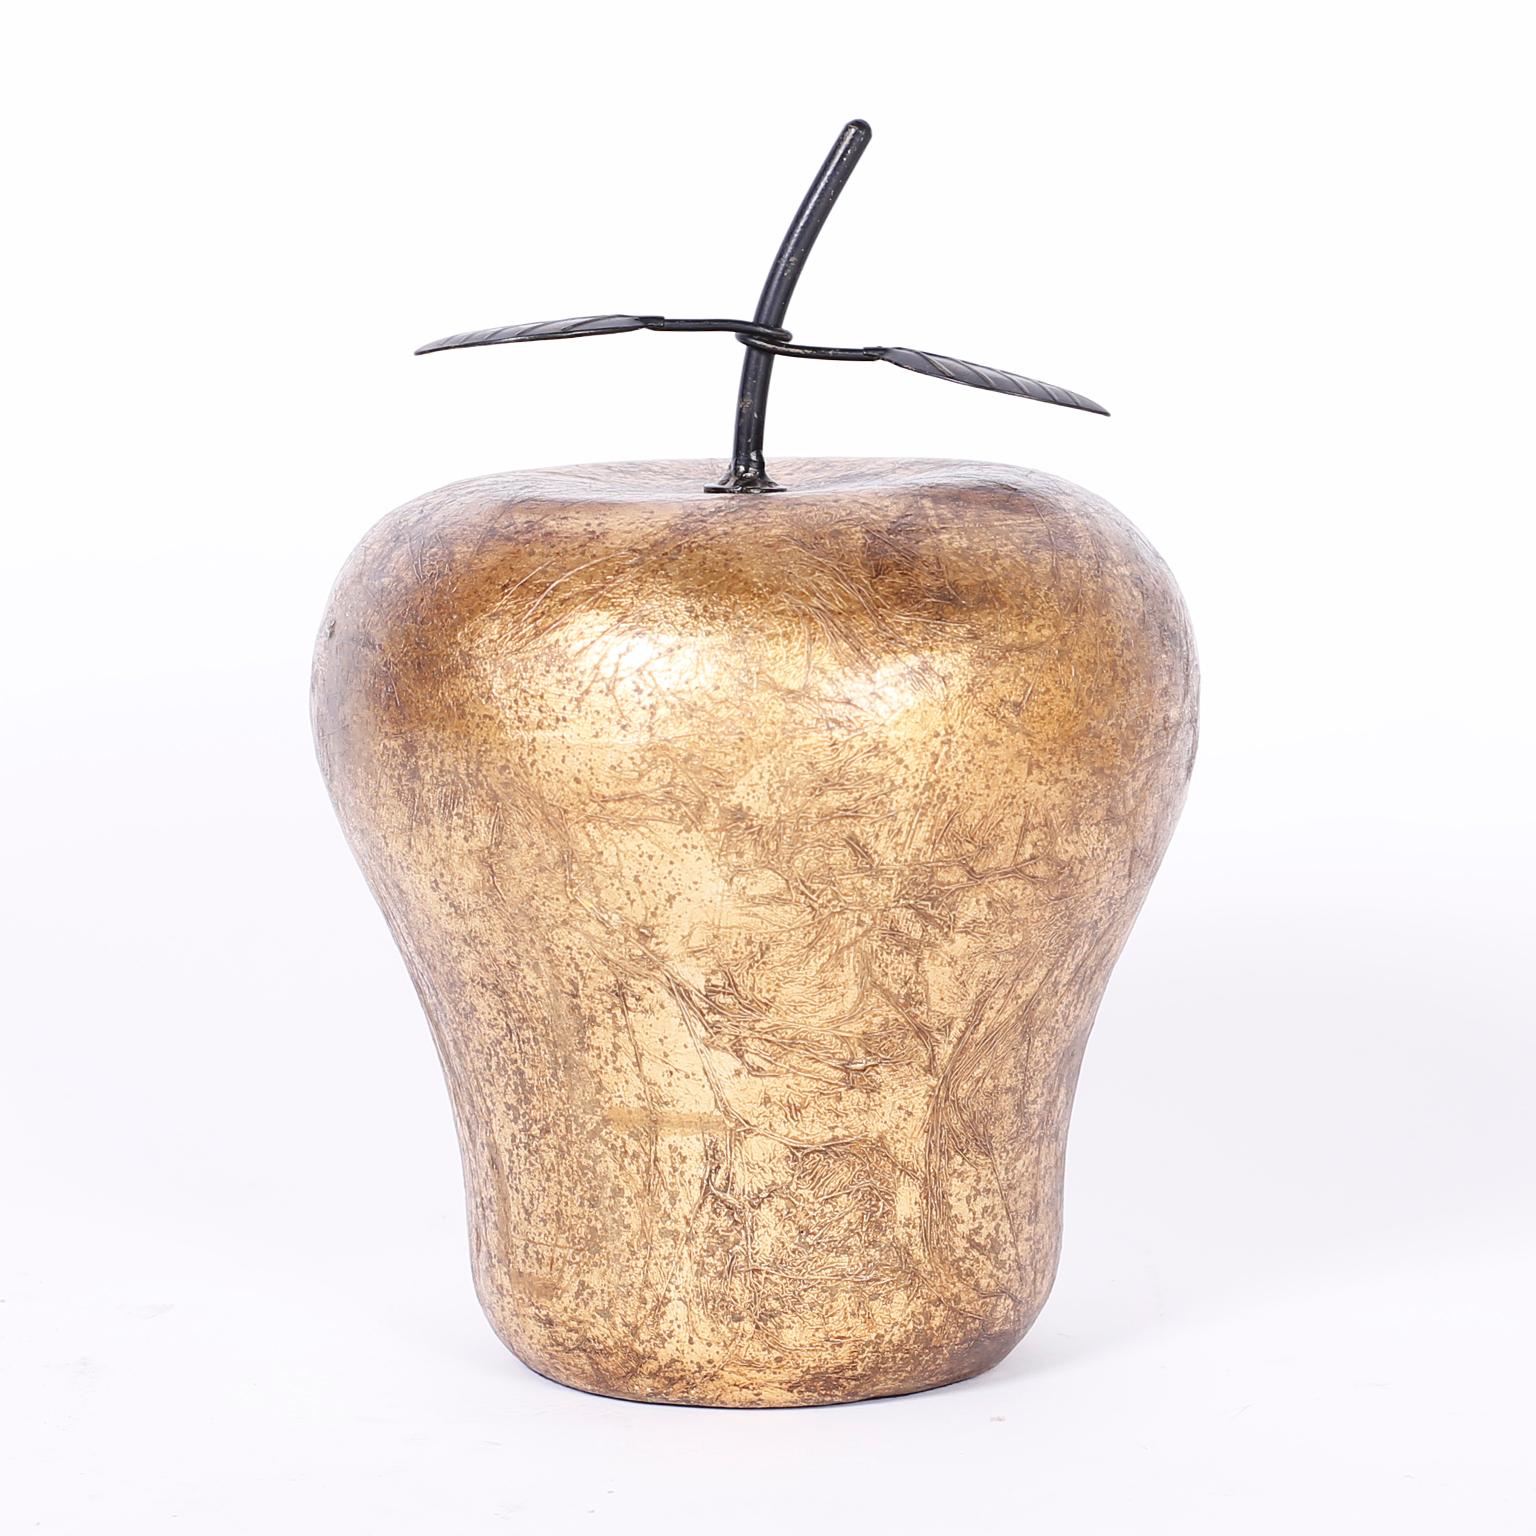 Grande pomme et poire sculpturales en porcelaine, décorées de feuilles d'or texturées et de feuilles de métal. Les prix sont fixés à l'unité. 

Mesures de la pomme : H 13, DM 9

Mesures de la poire : H 16, DM 9.